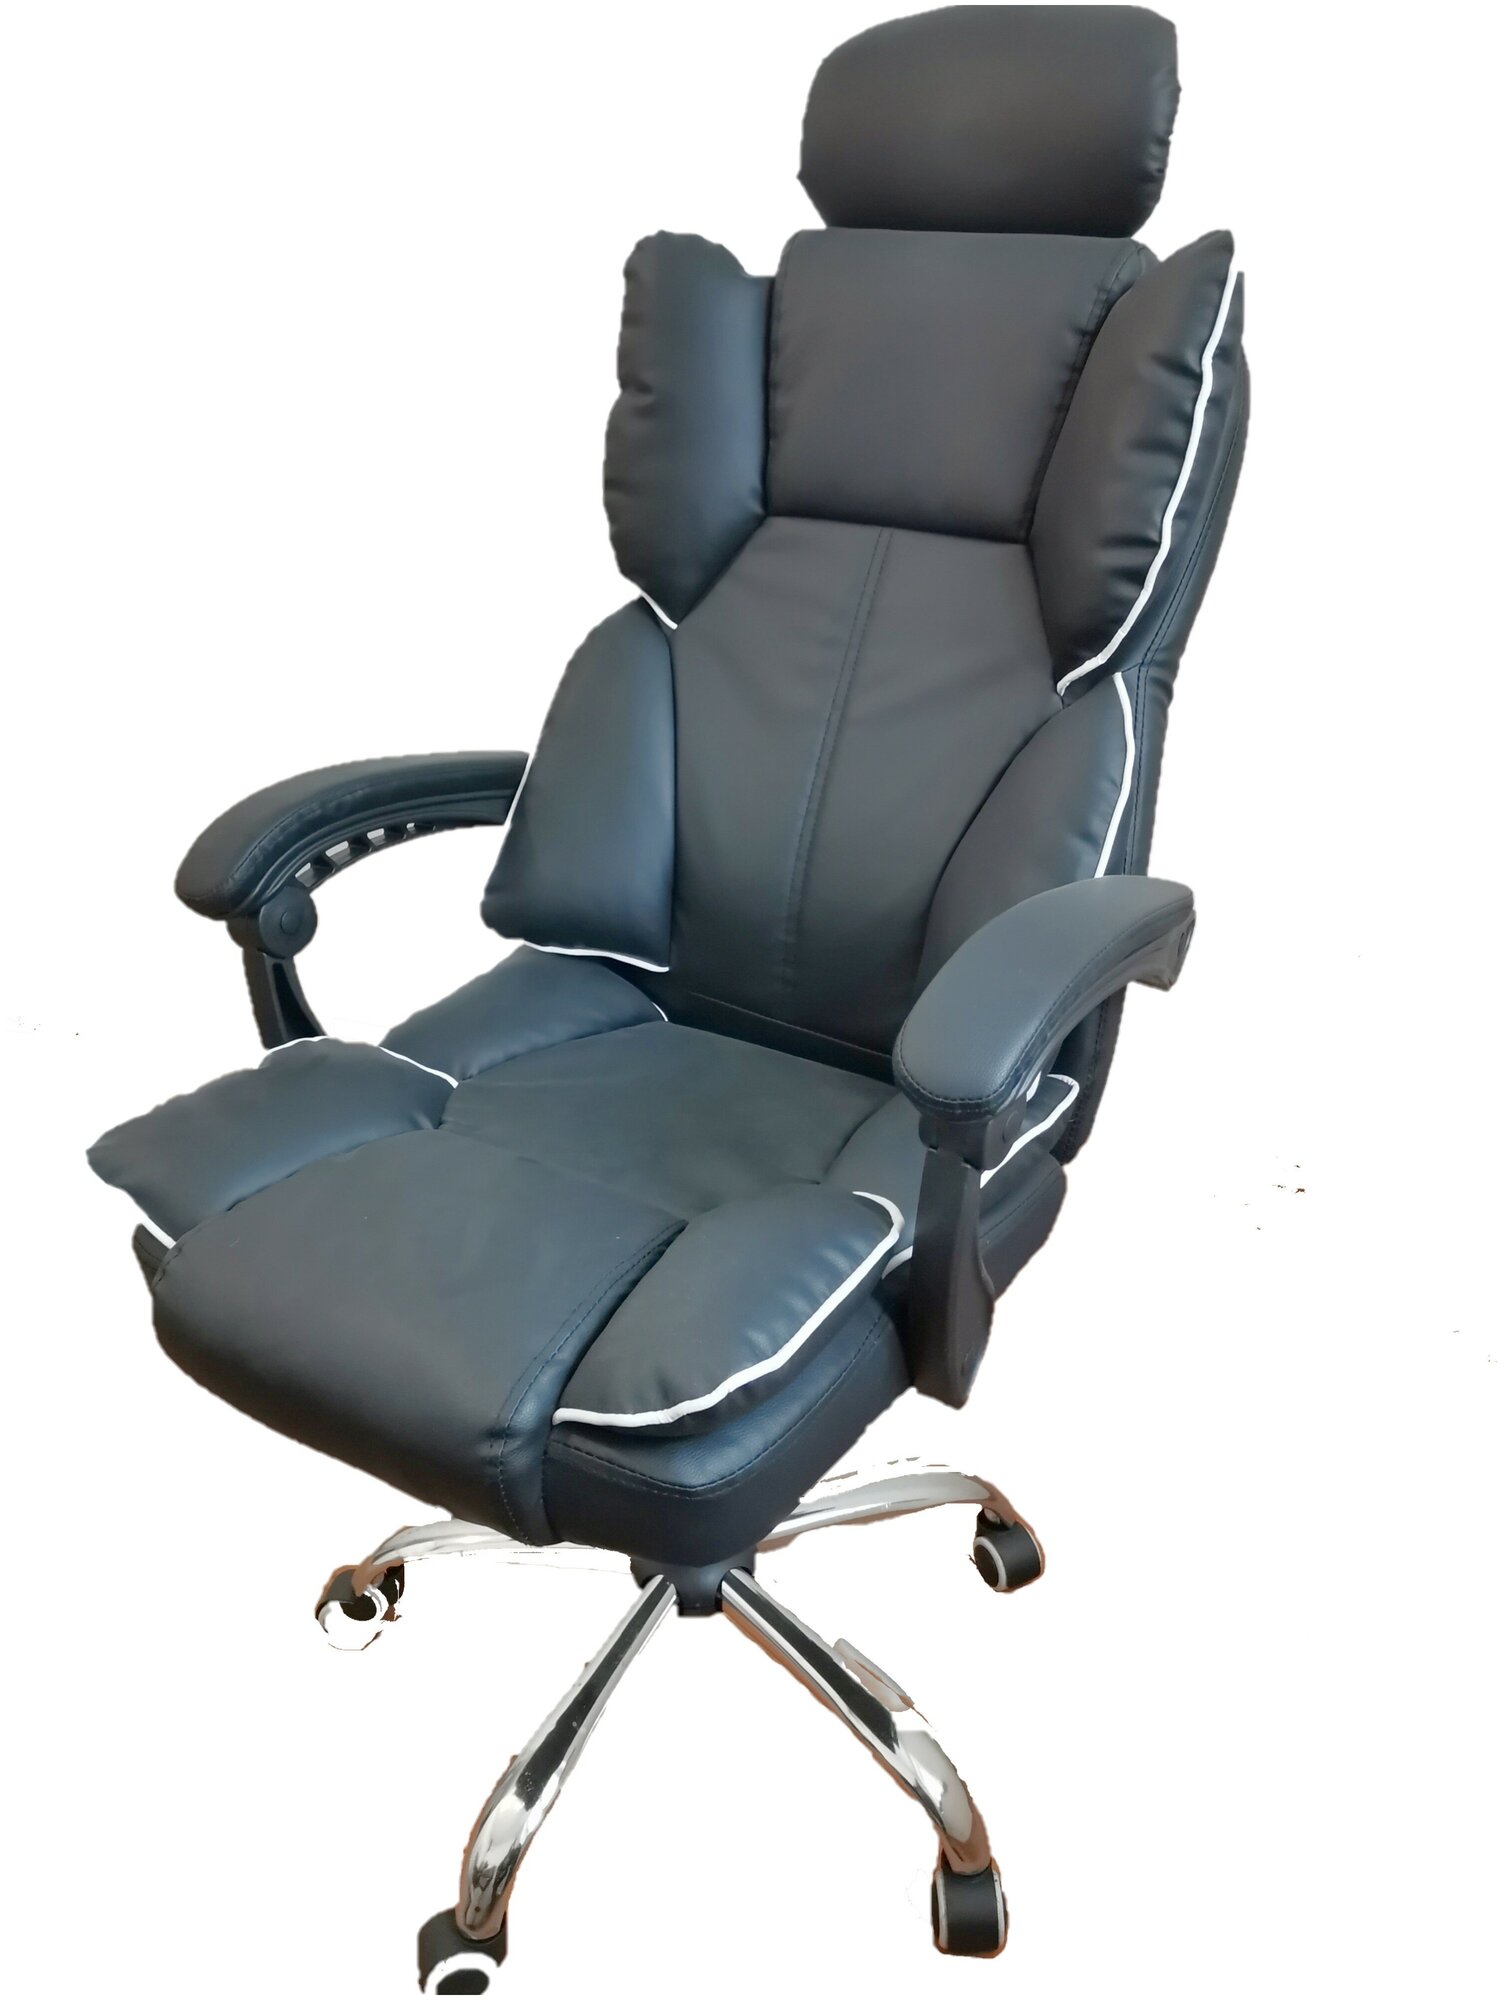 Компьютерное кресло Domtwo STATUS-808F офисное, обивка: искусственная кожа, цвет: black - фотография № 6